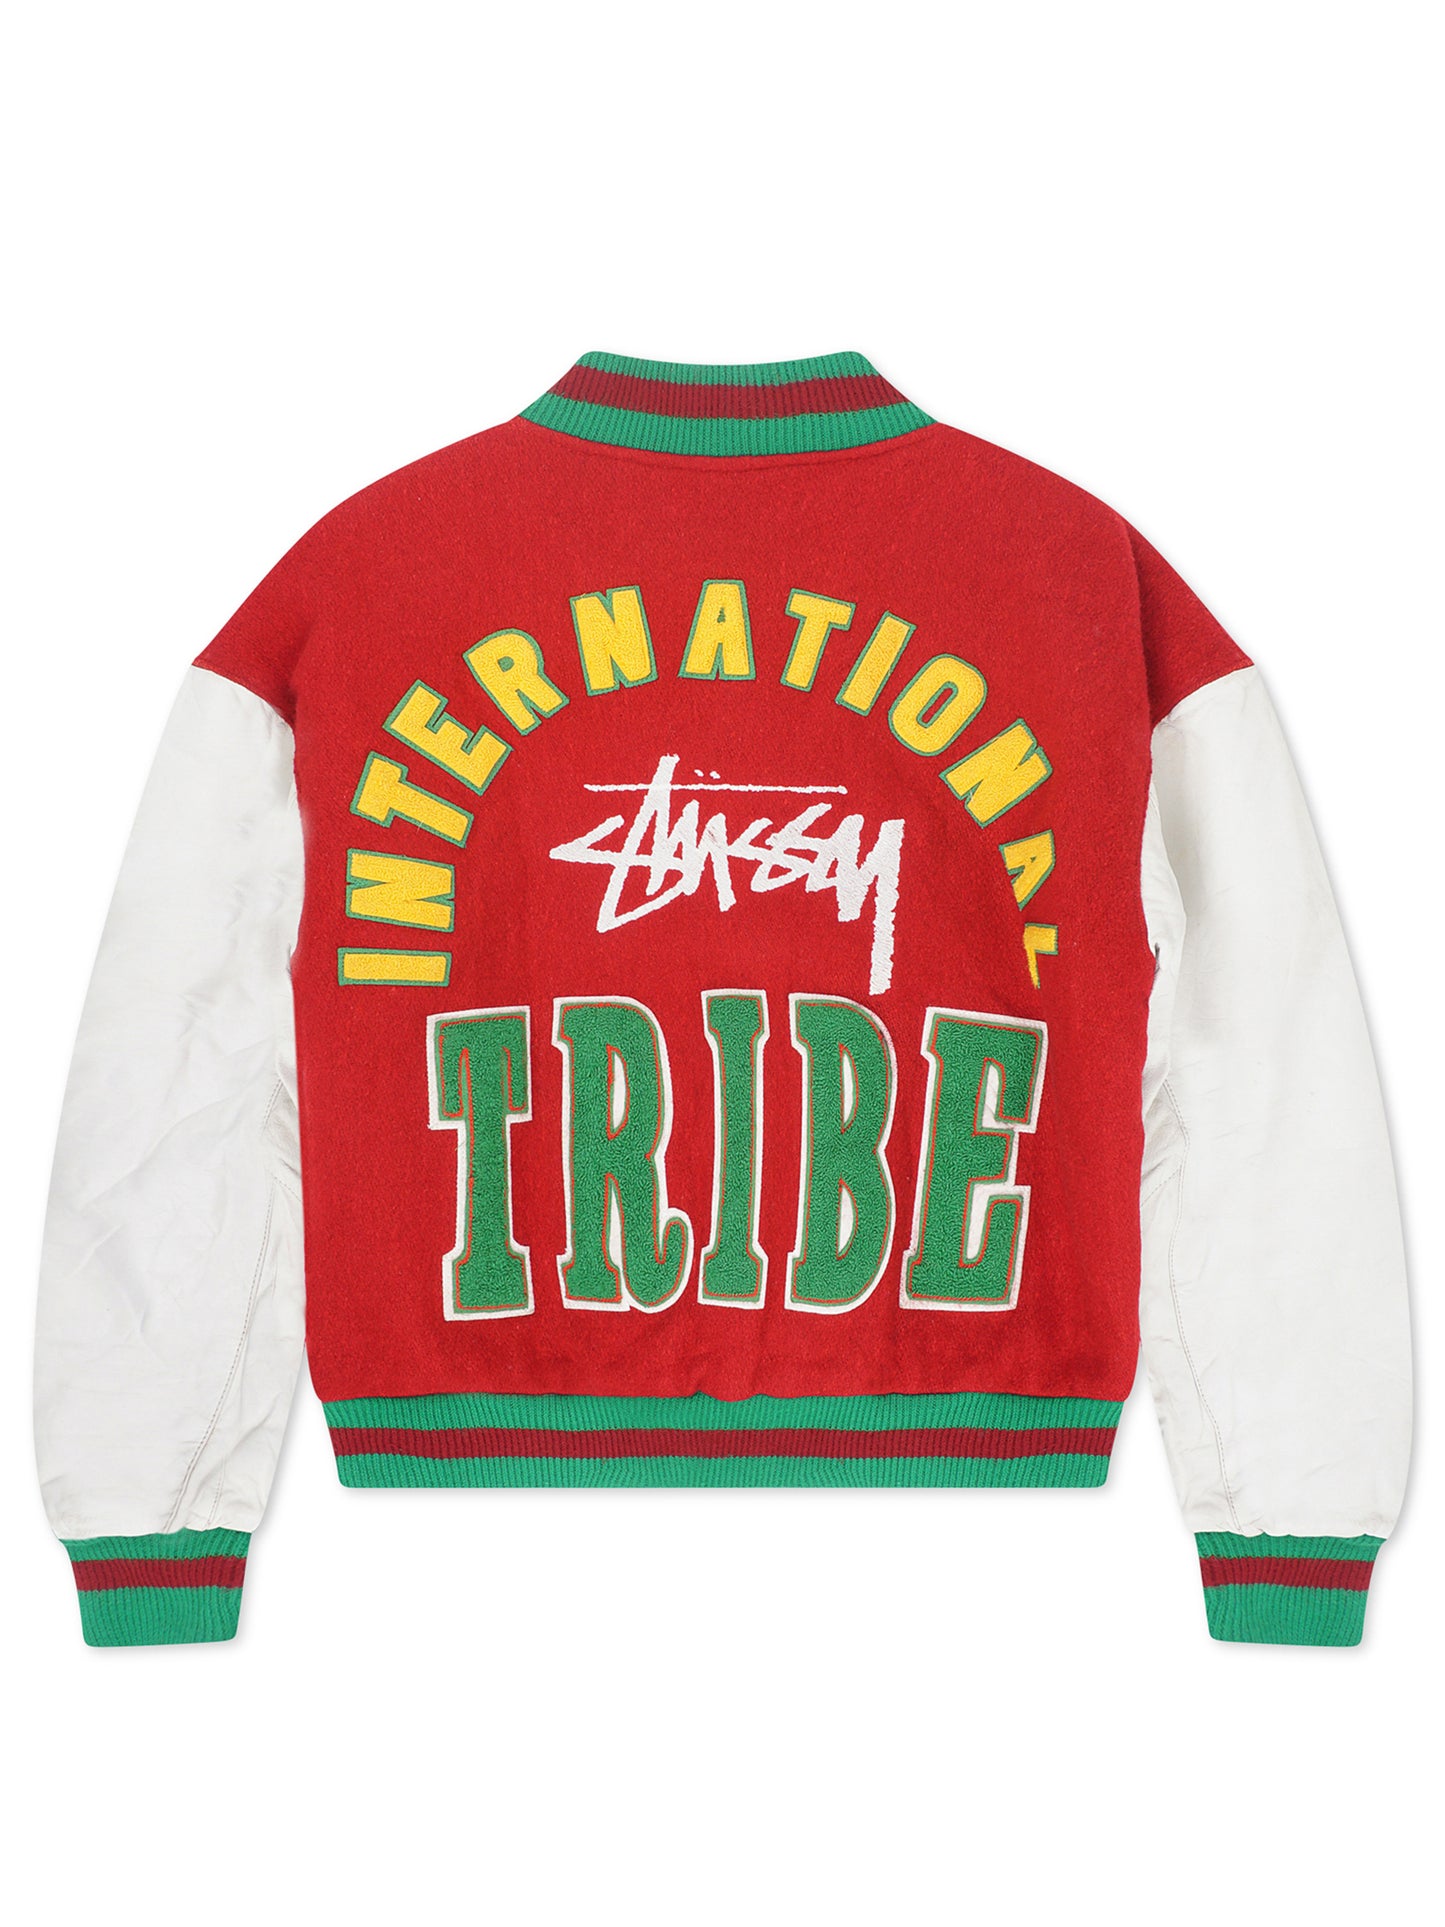 1990 Stussy International Tribe Varsity Jacket